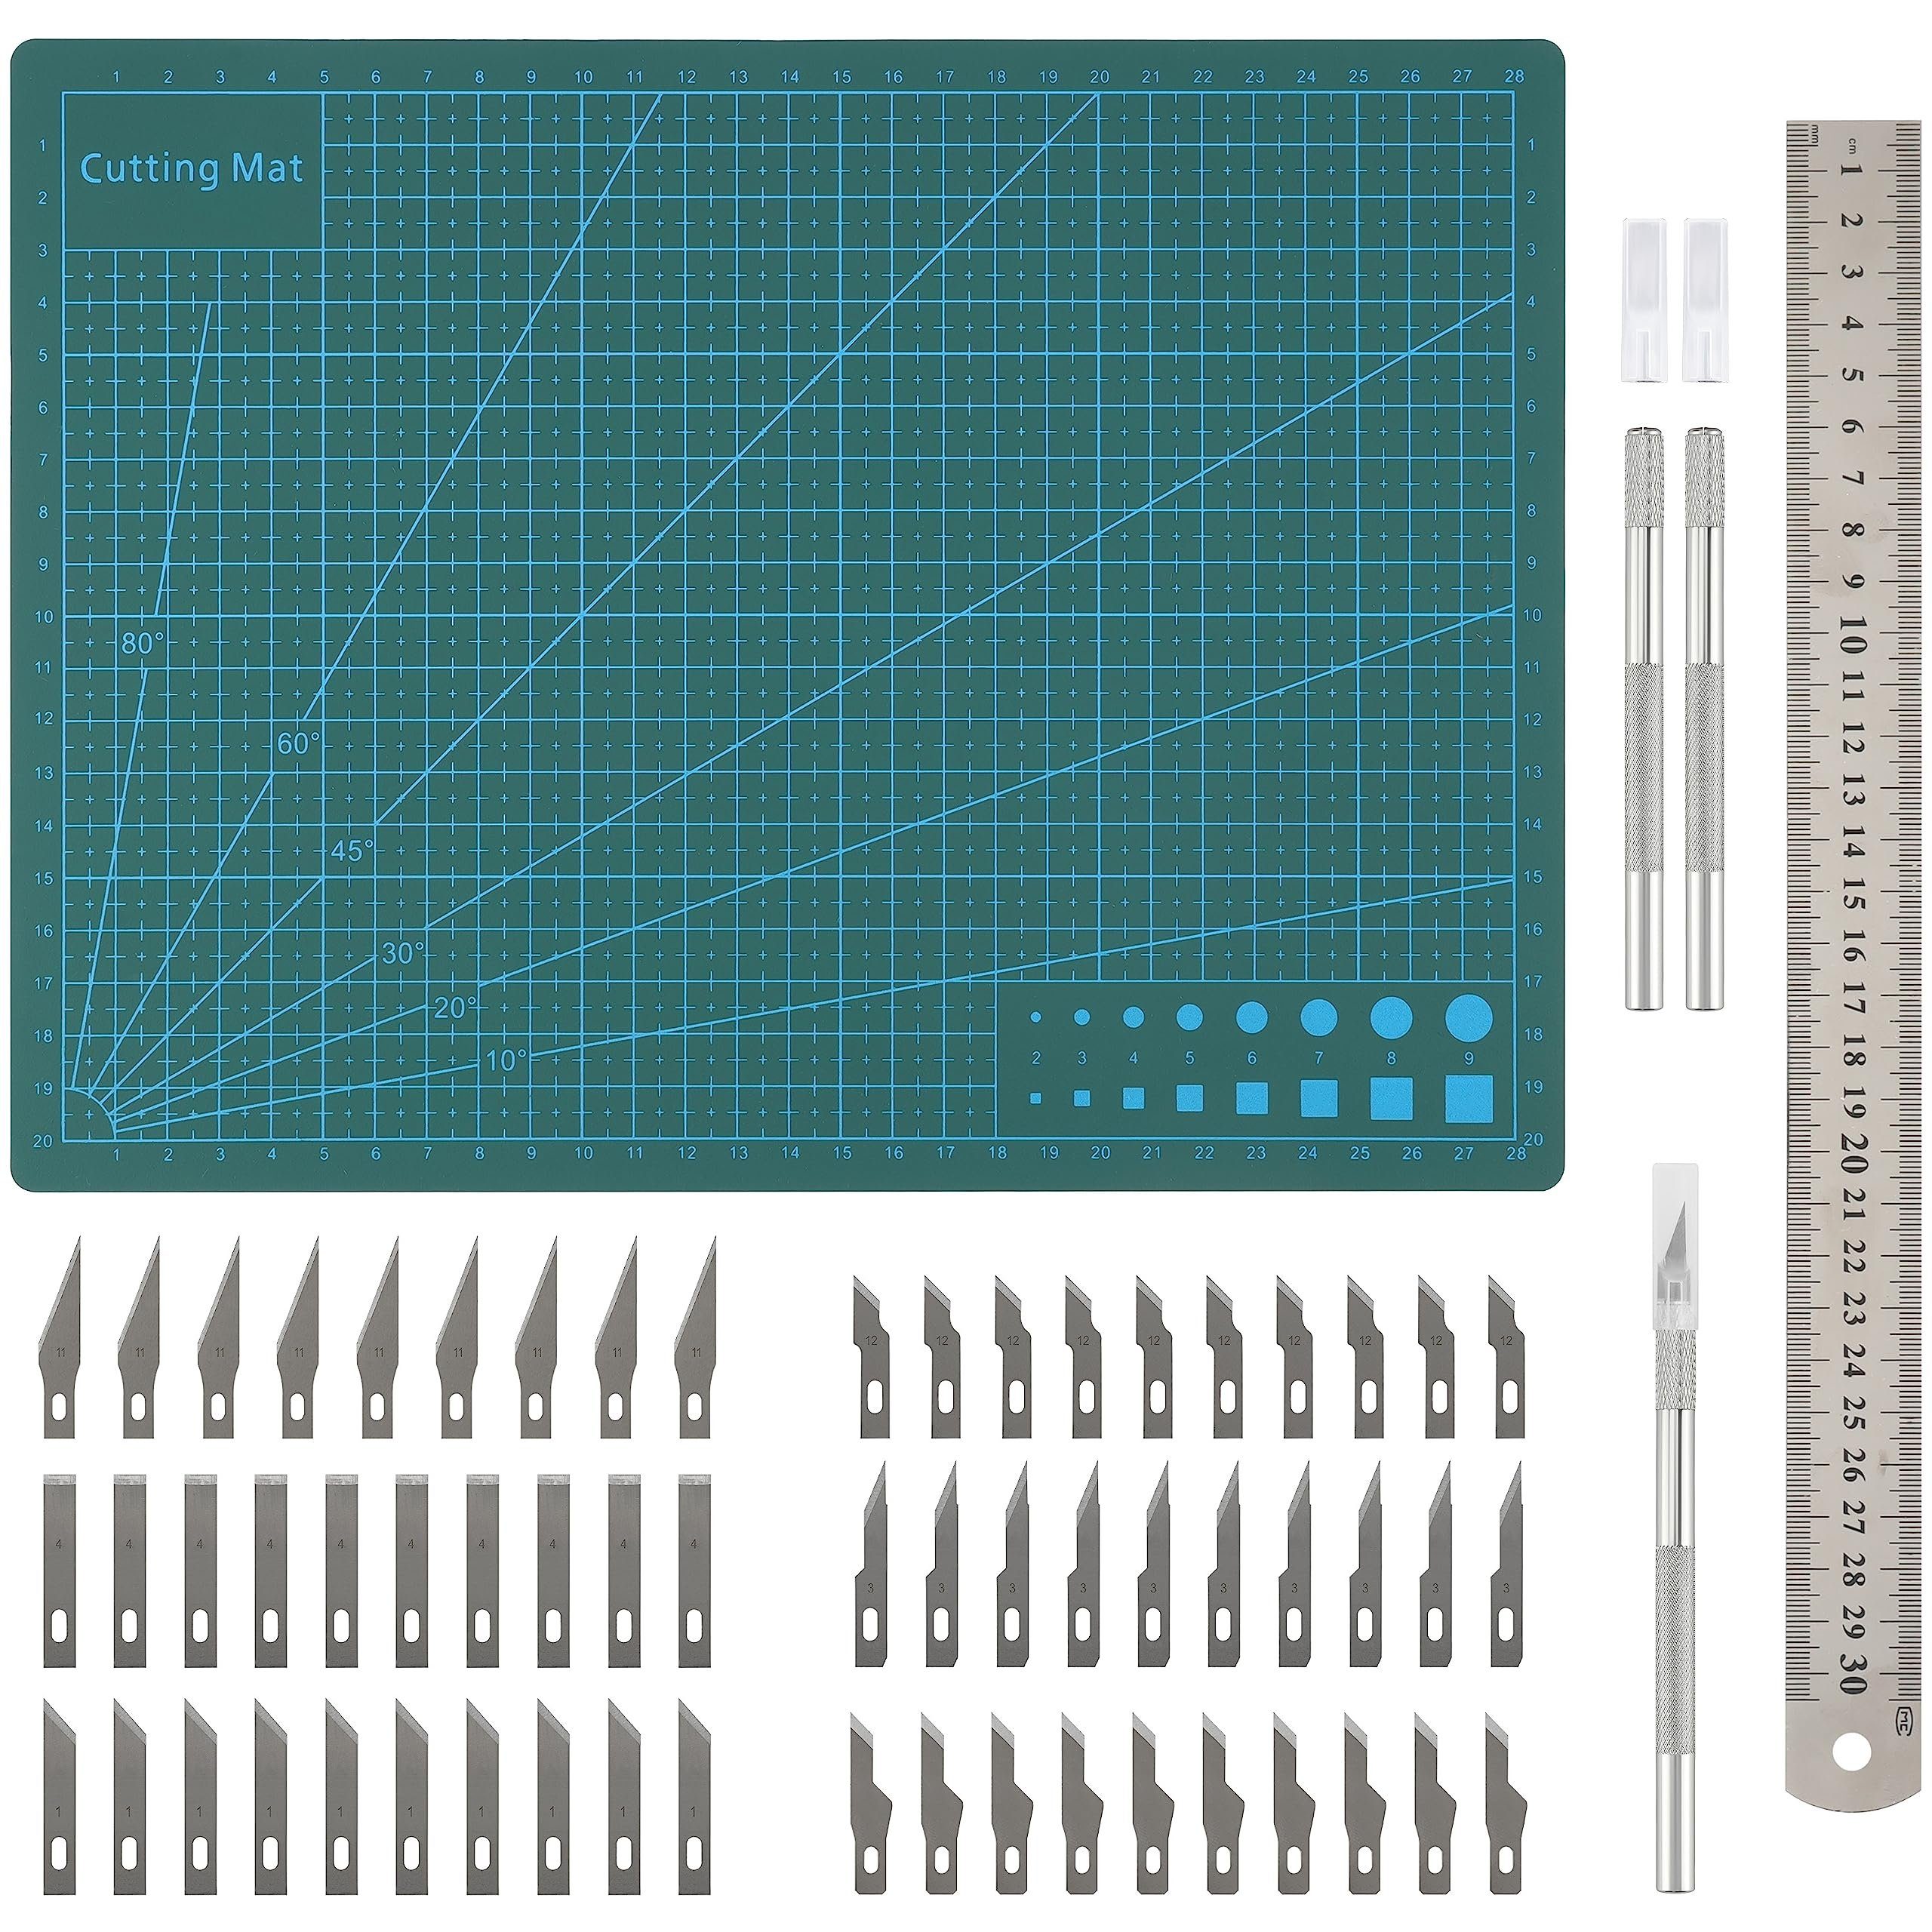 Belle Vous Cuttermesser Bastelmesser Skalpell Set - Präzisions-Hobbyklingen | Cutter